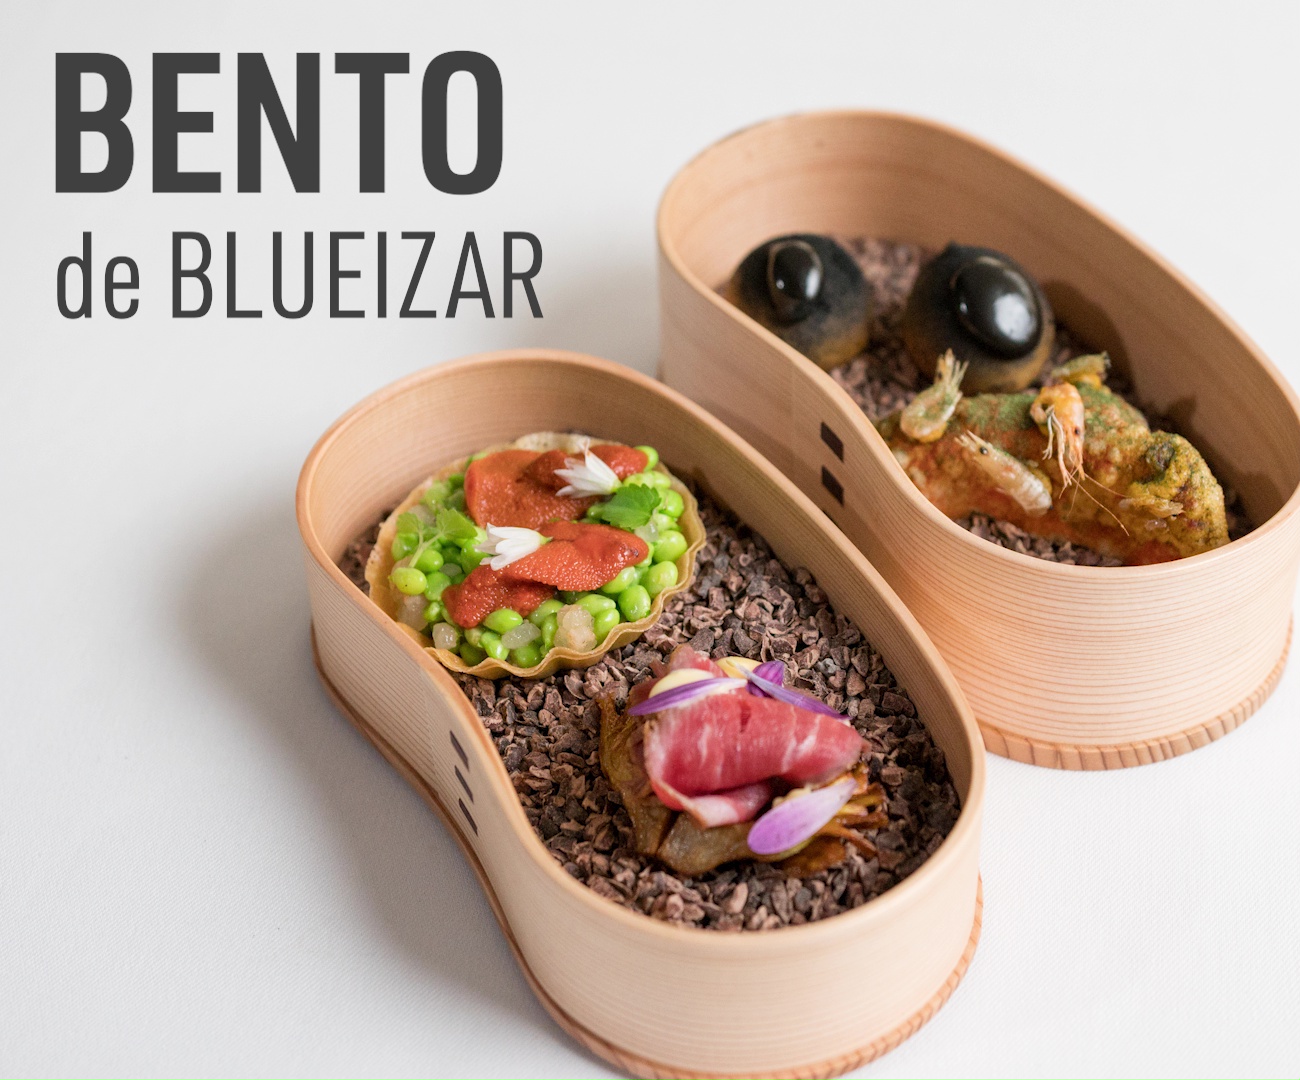 Apenas con un año de haber abierto el local, BLUEIZAR se ha colocado en el número 1 de Trip Advisor en Bilbao. La cocina de Bruno no solo es estética, sino deliciosa y sabrosa. Está basada en su memo-ria culinaria, cultivada en cada lugar en el que ha dejado su huella y los ingredientes de cada tempora-da. Bruno nos sorprende con su versión de Bento con productos locales y un toque japonés.